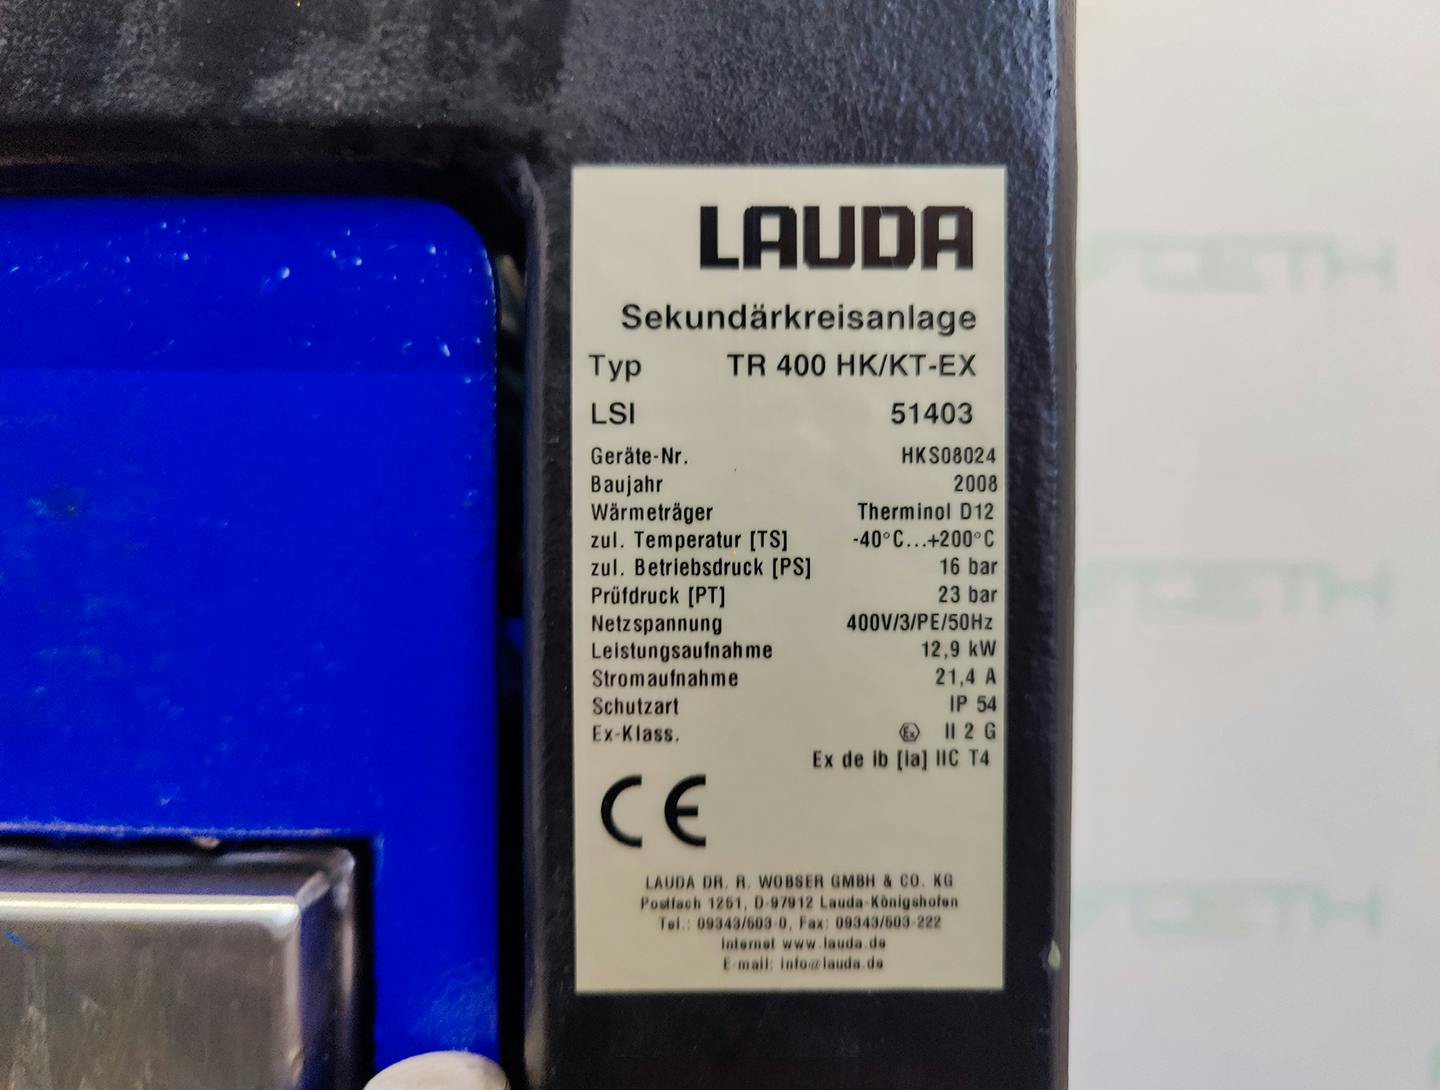 Lauda TR400 HK/KT-EX "secondary circuit system" - Temperature control unit - image 5